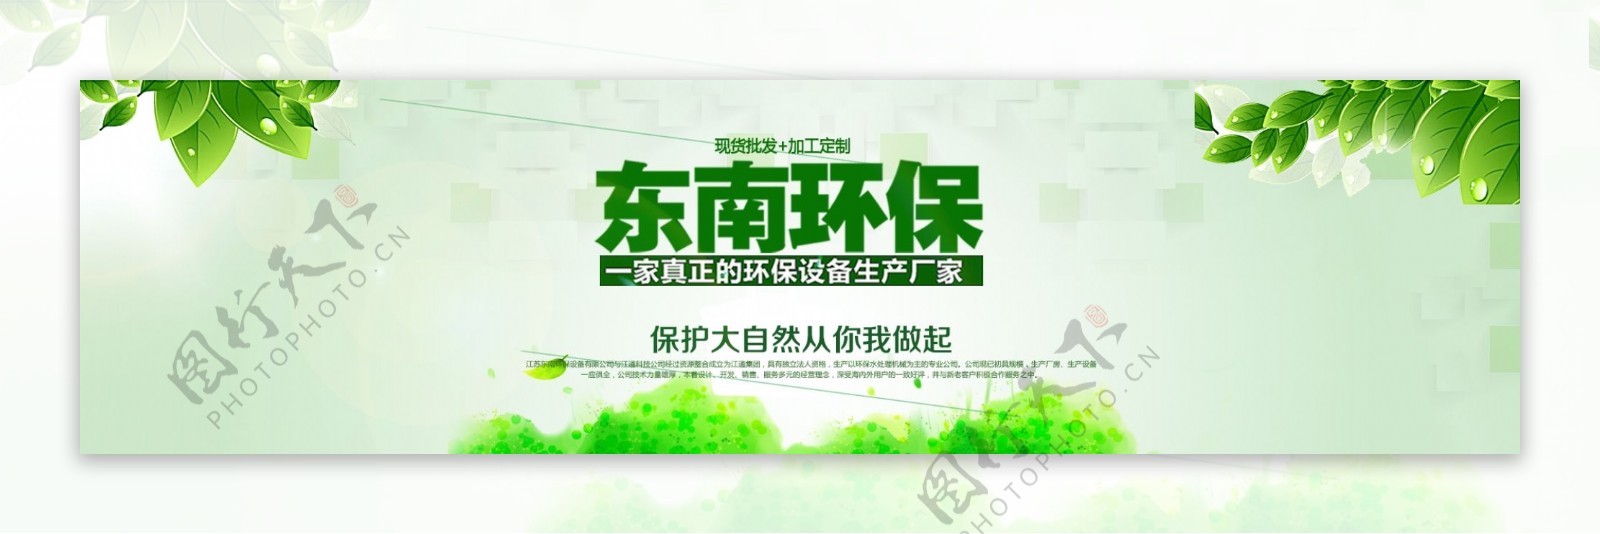 清新绿色环保设备海报淘宝阿里巴巴首页通用